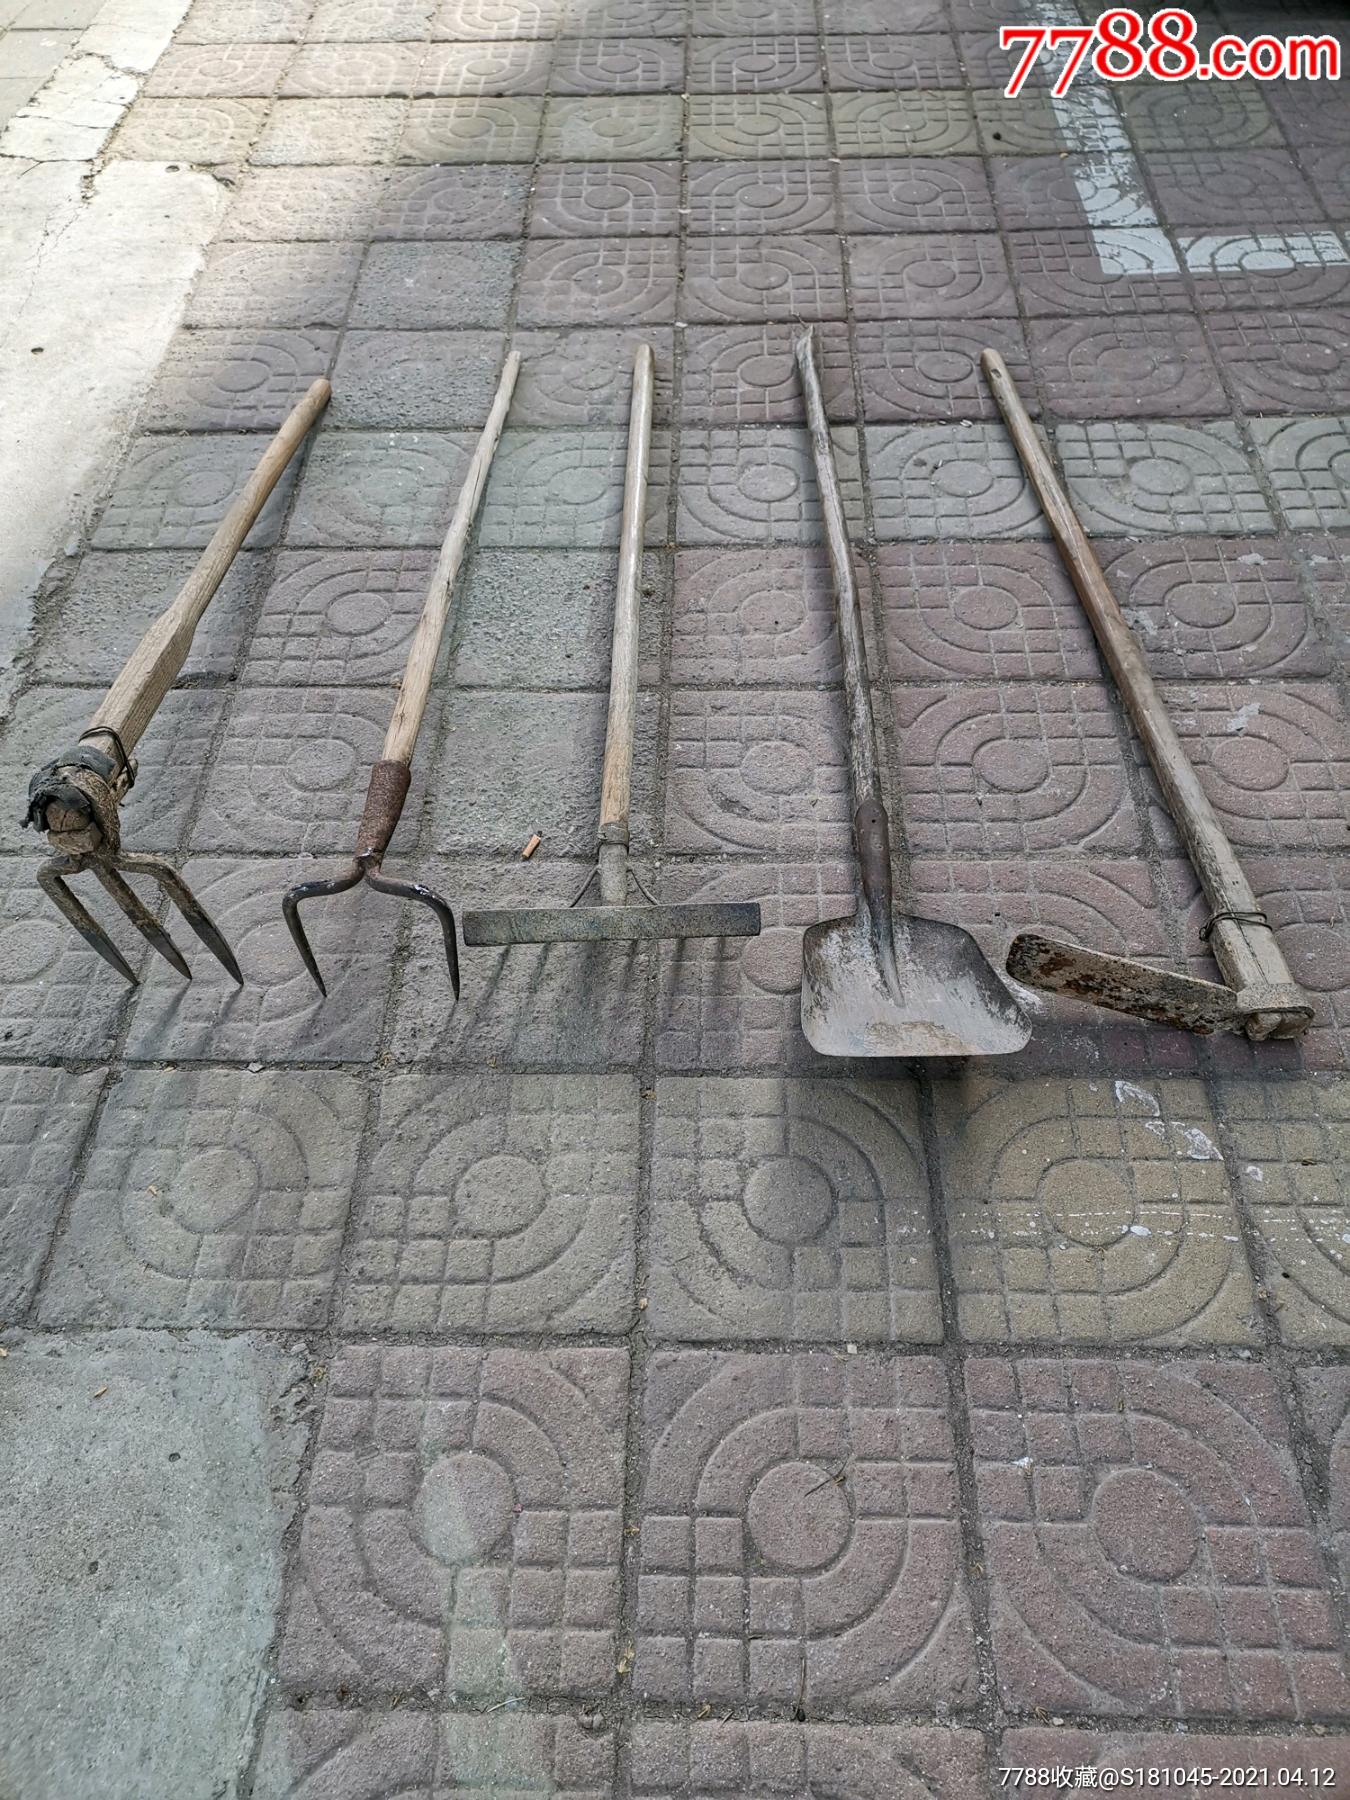 农用工具:铁锨,两齿耙,三齿耙,五齿耙共五件